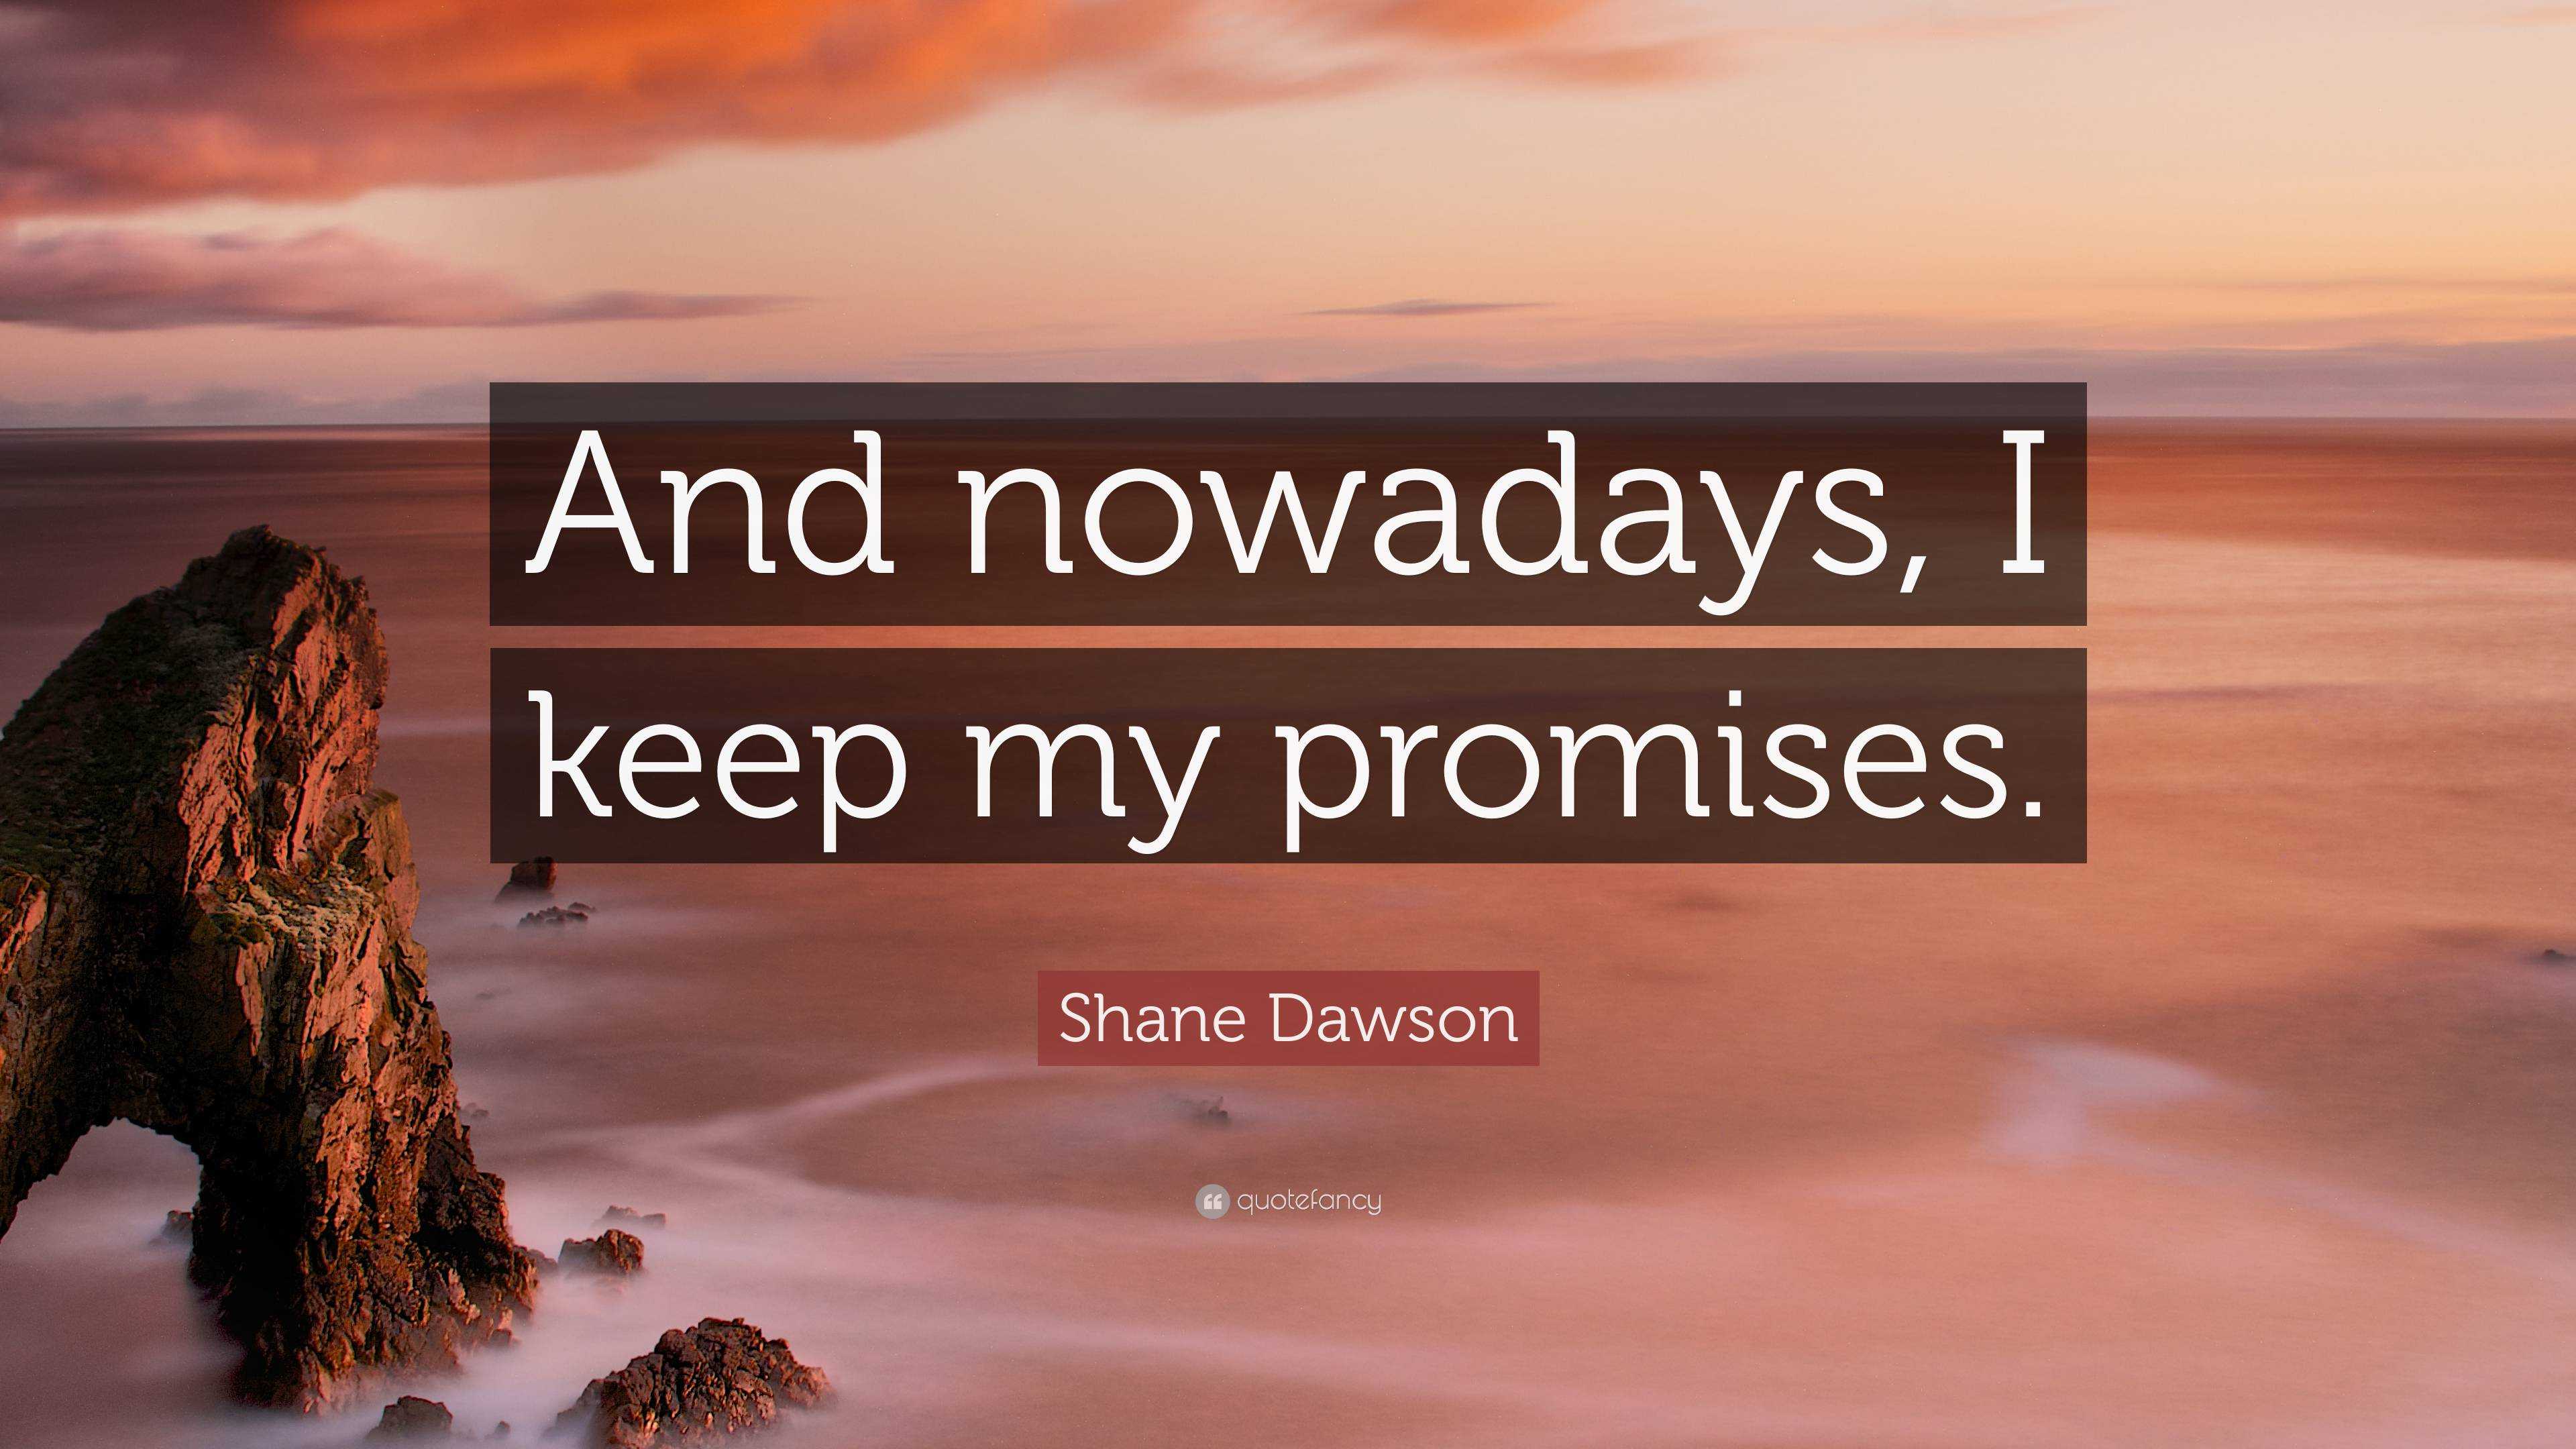 shane dawson quotes sayings